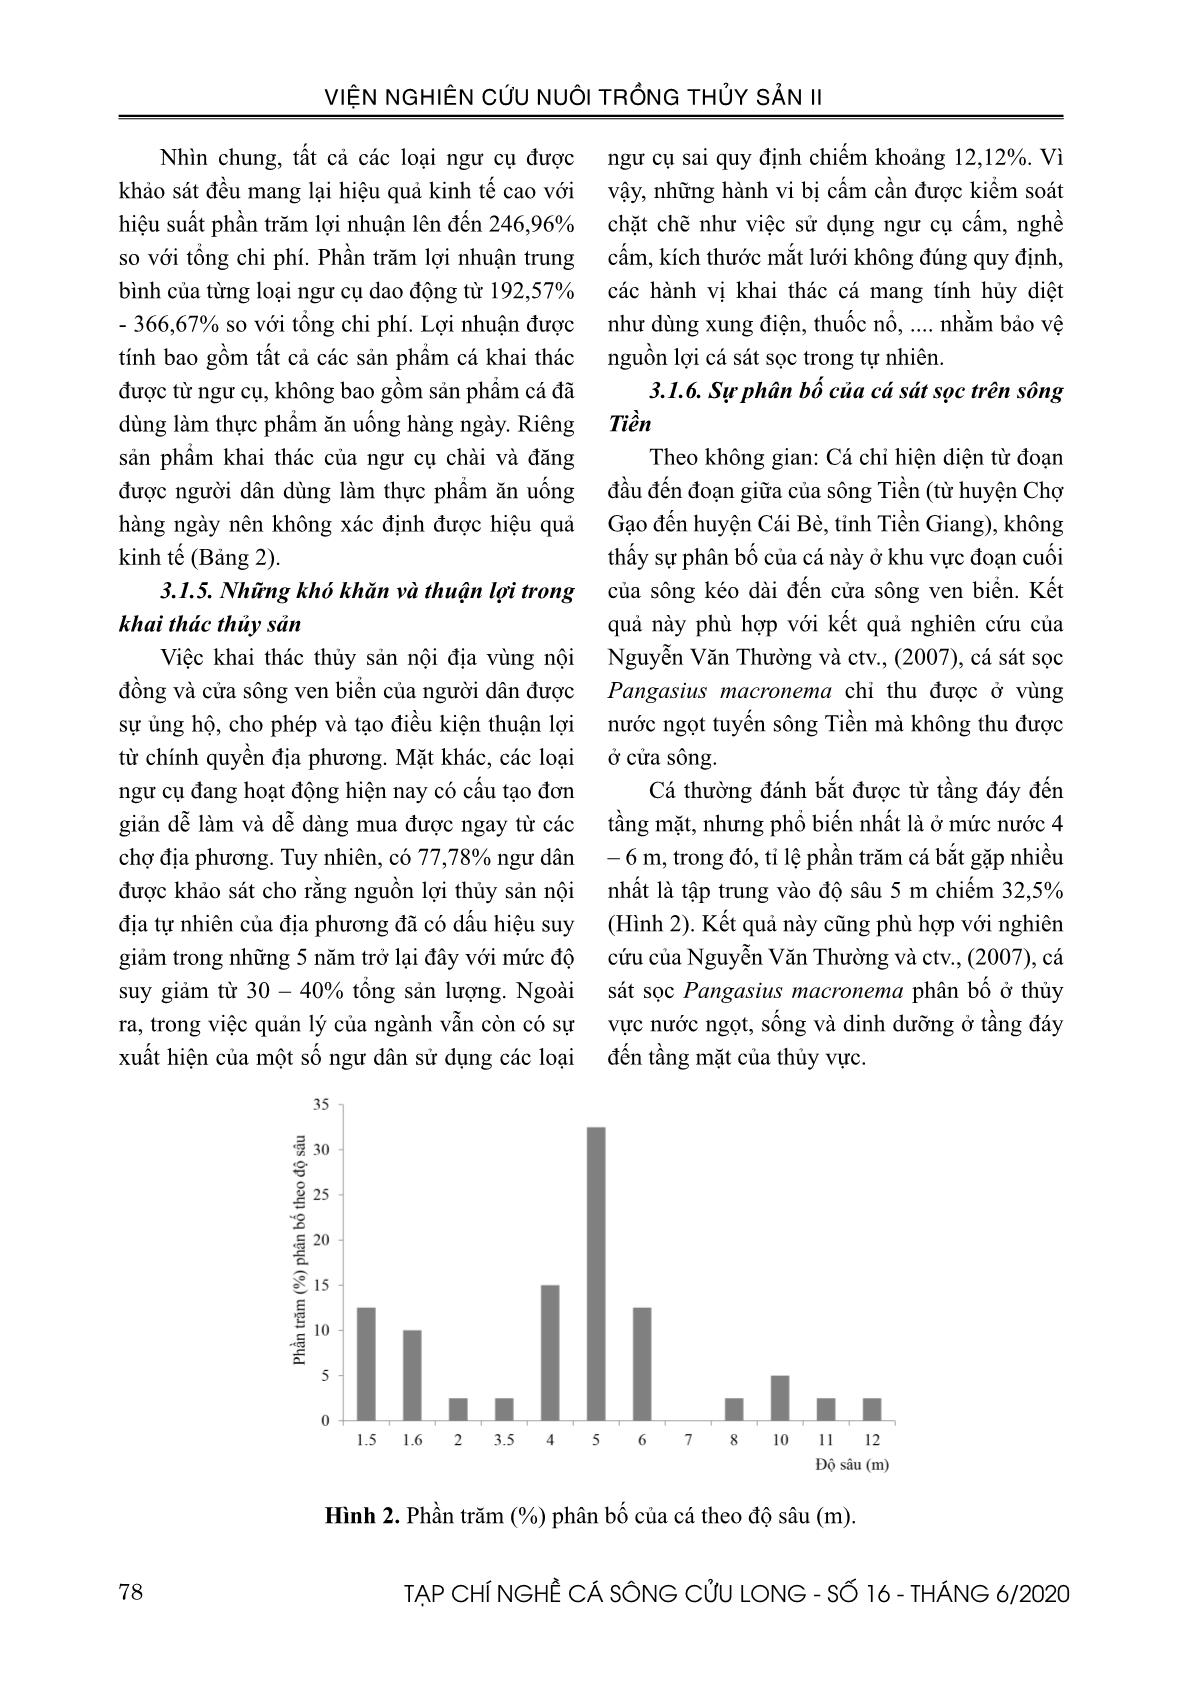 Hiện trạng khai thác và nuôi trồng cá sát sọc Pangasius macronema Bleeker, 1850 ở tỉnh Tiền Giang trang 4